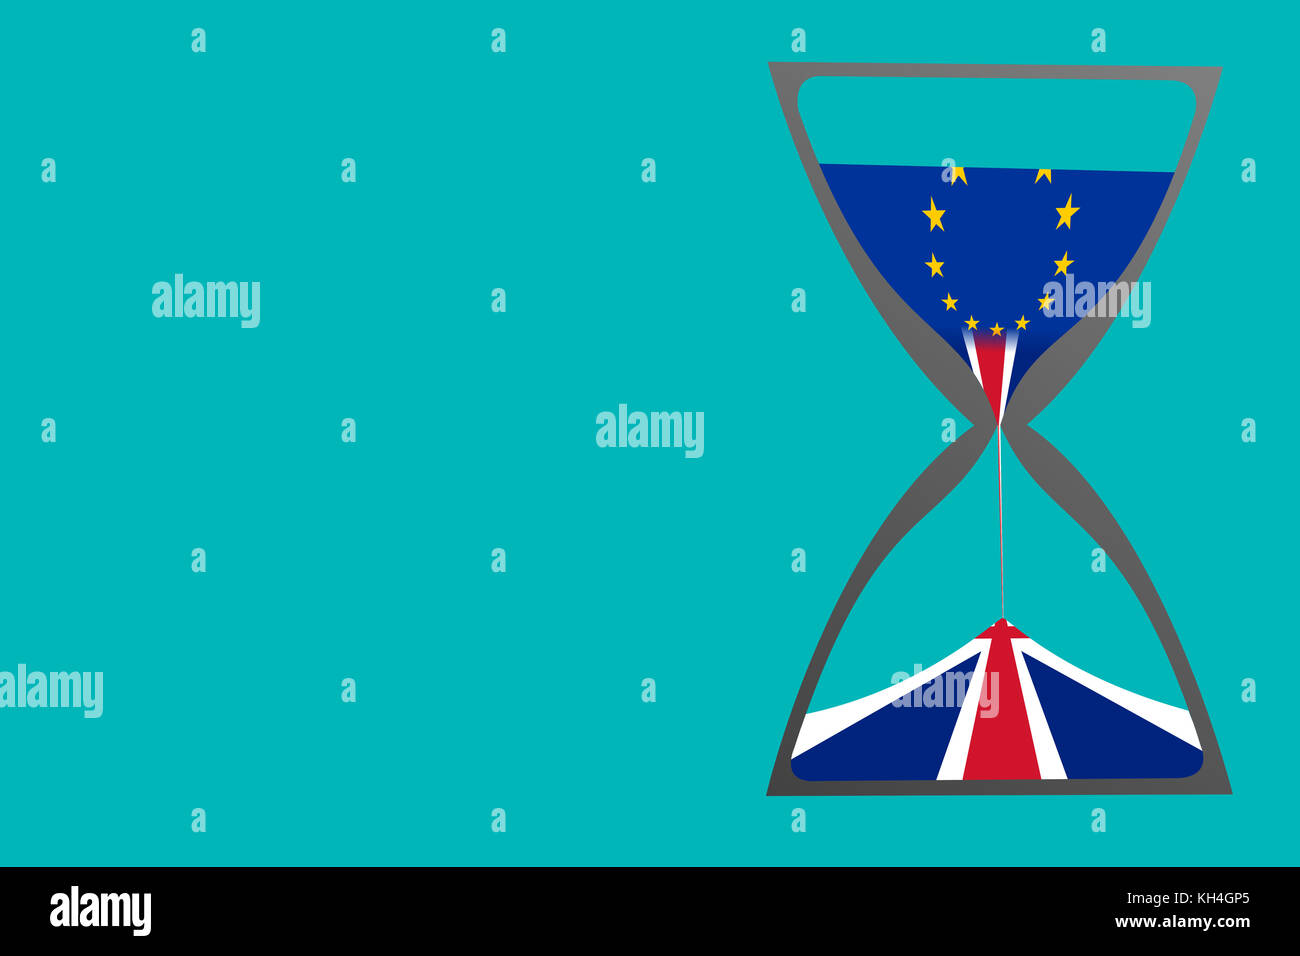 Un concetto di brexit come mostrato da una illustrazione di una clessidra con la bandiera dell'Unione europea come la sabbia superiore e il Regno Unito bandiera che gocciolava giù. Foto Stock